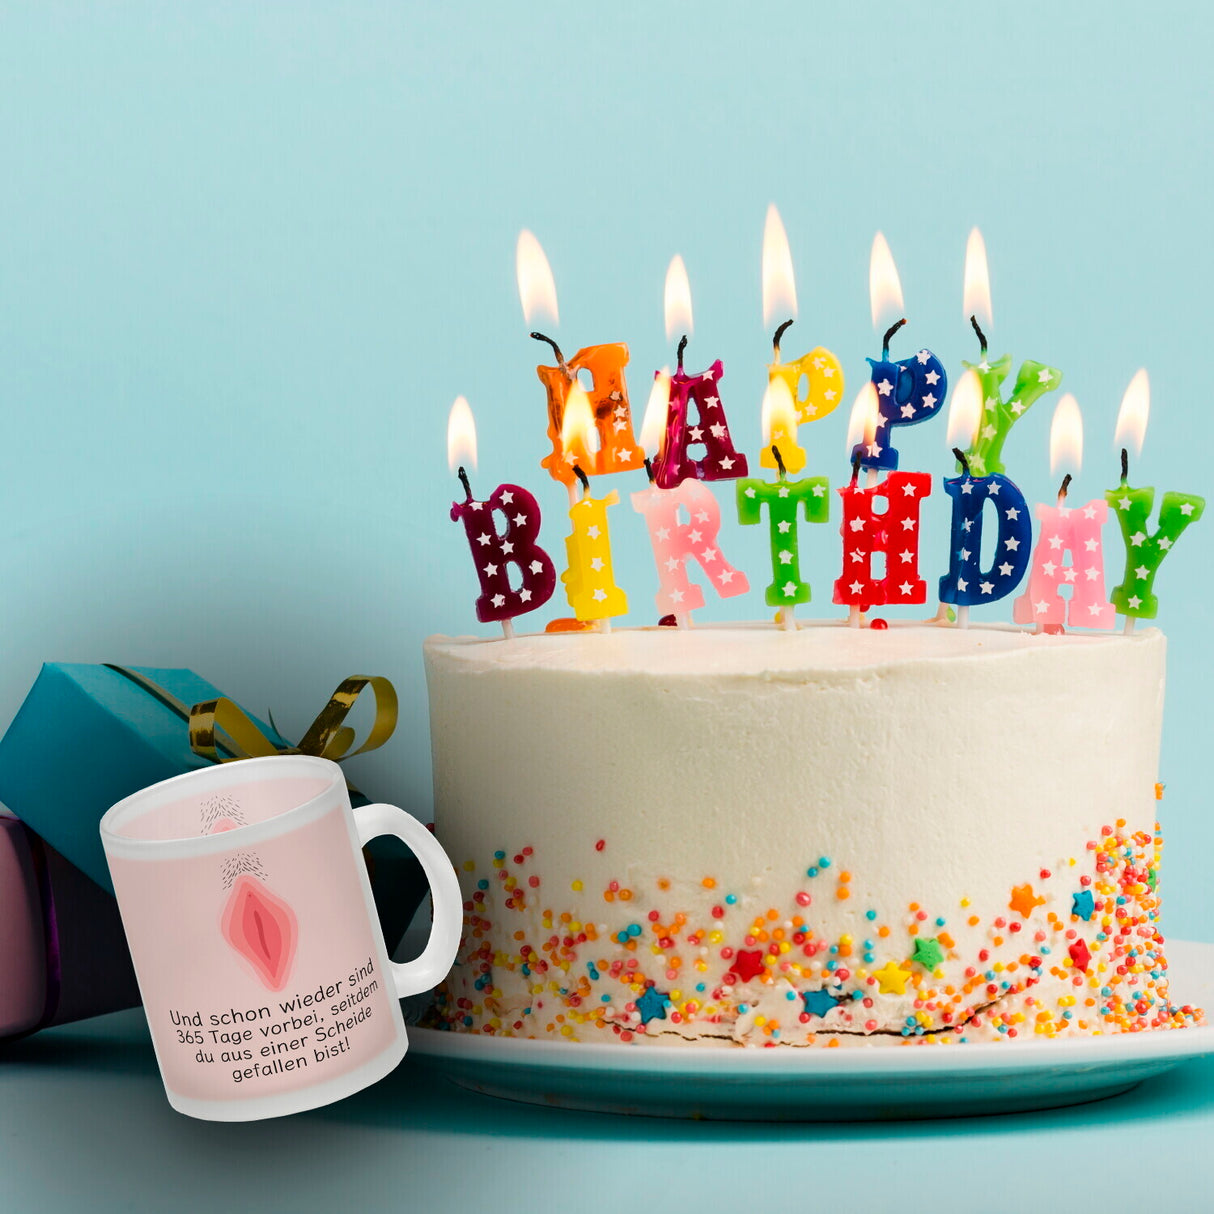 Wieder sind 365 Tage vorbei… Geburtstag Kaffeebecher mit Scheide Motiv